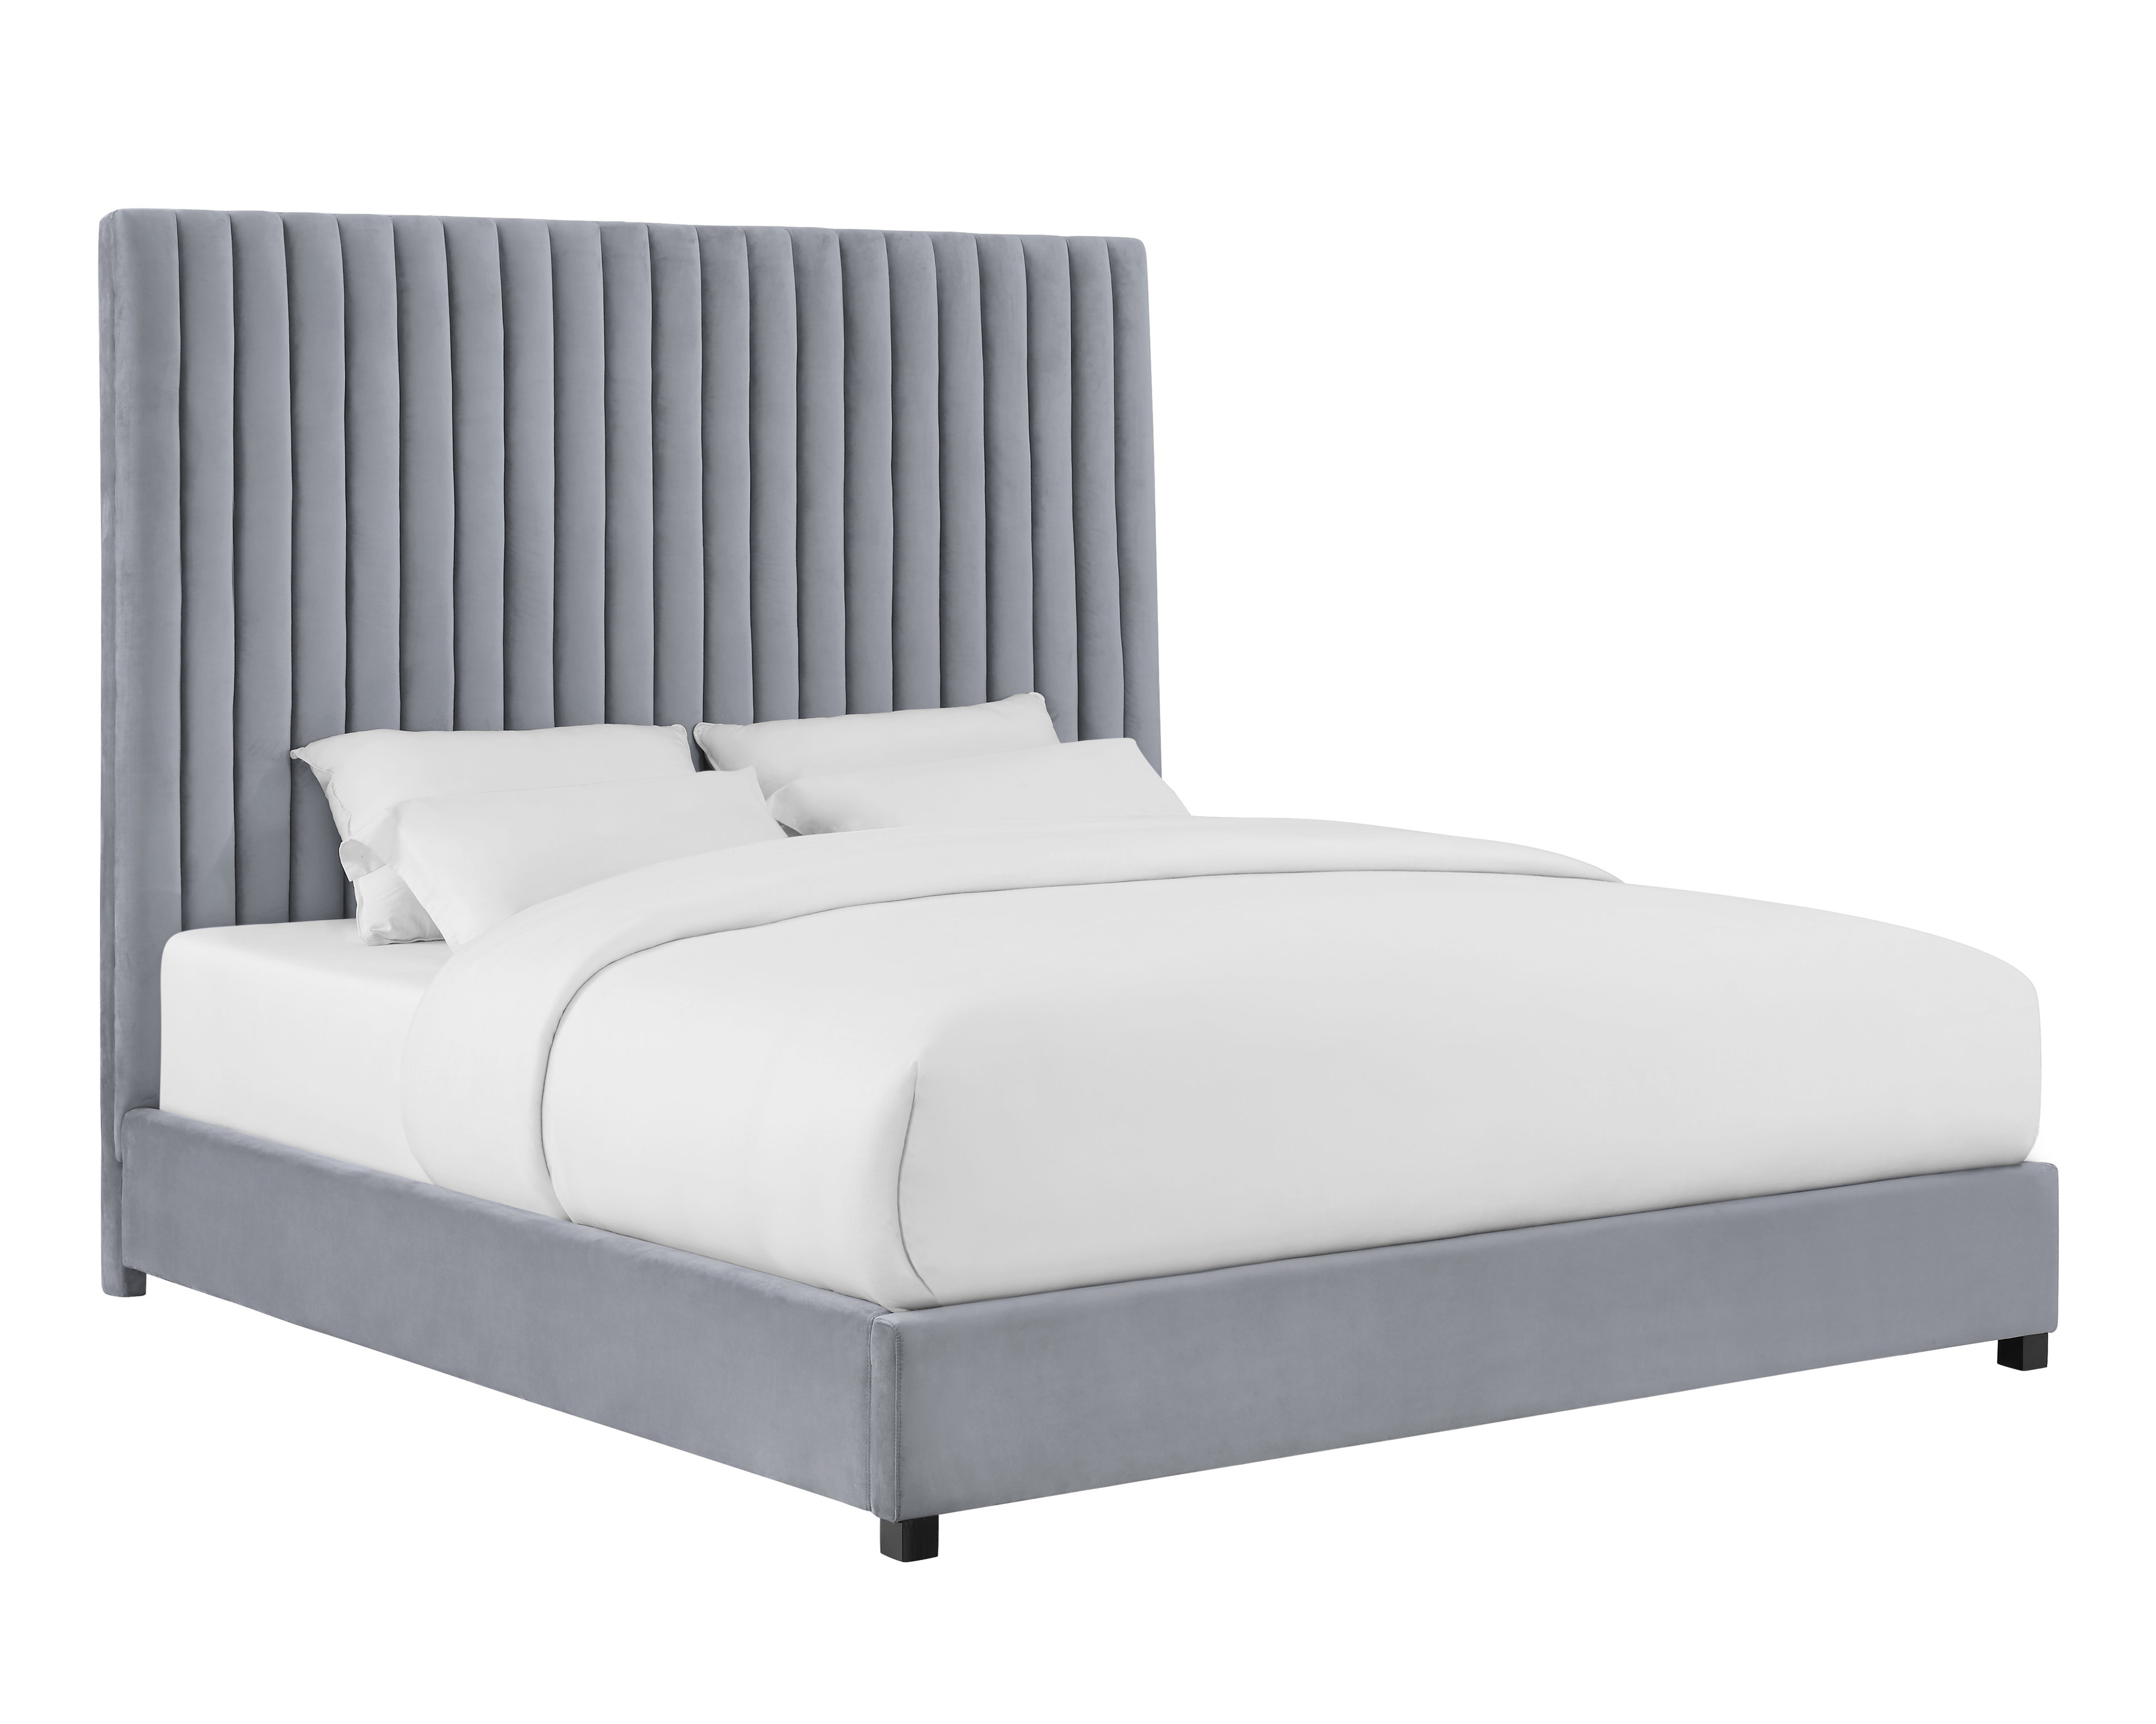 Arabelle Grey Bed in King - TOV-B96